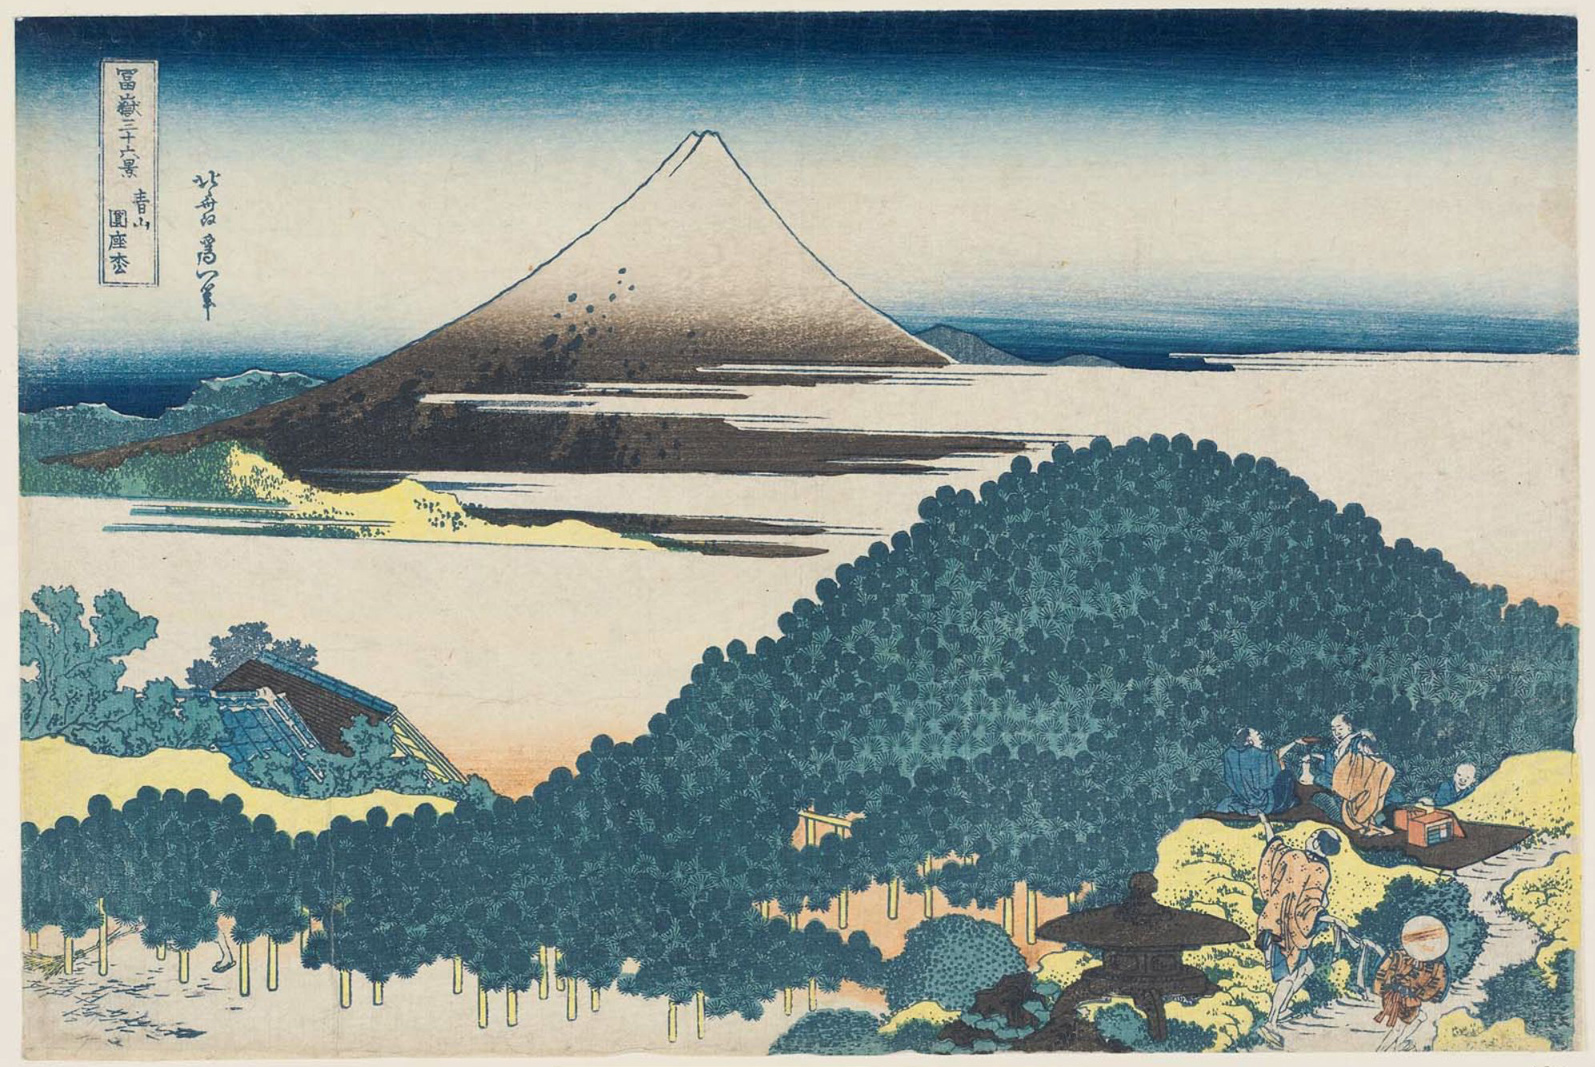 Hokusai - #6 The Cushion Pine at Aoyama - 36 Views of Mt Fuji